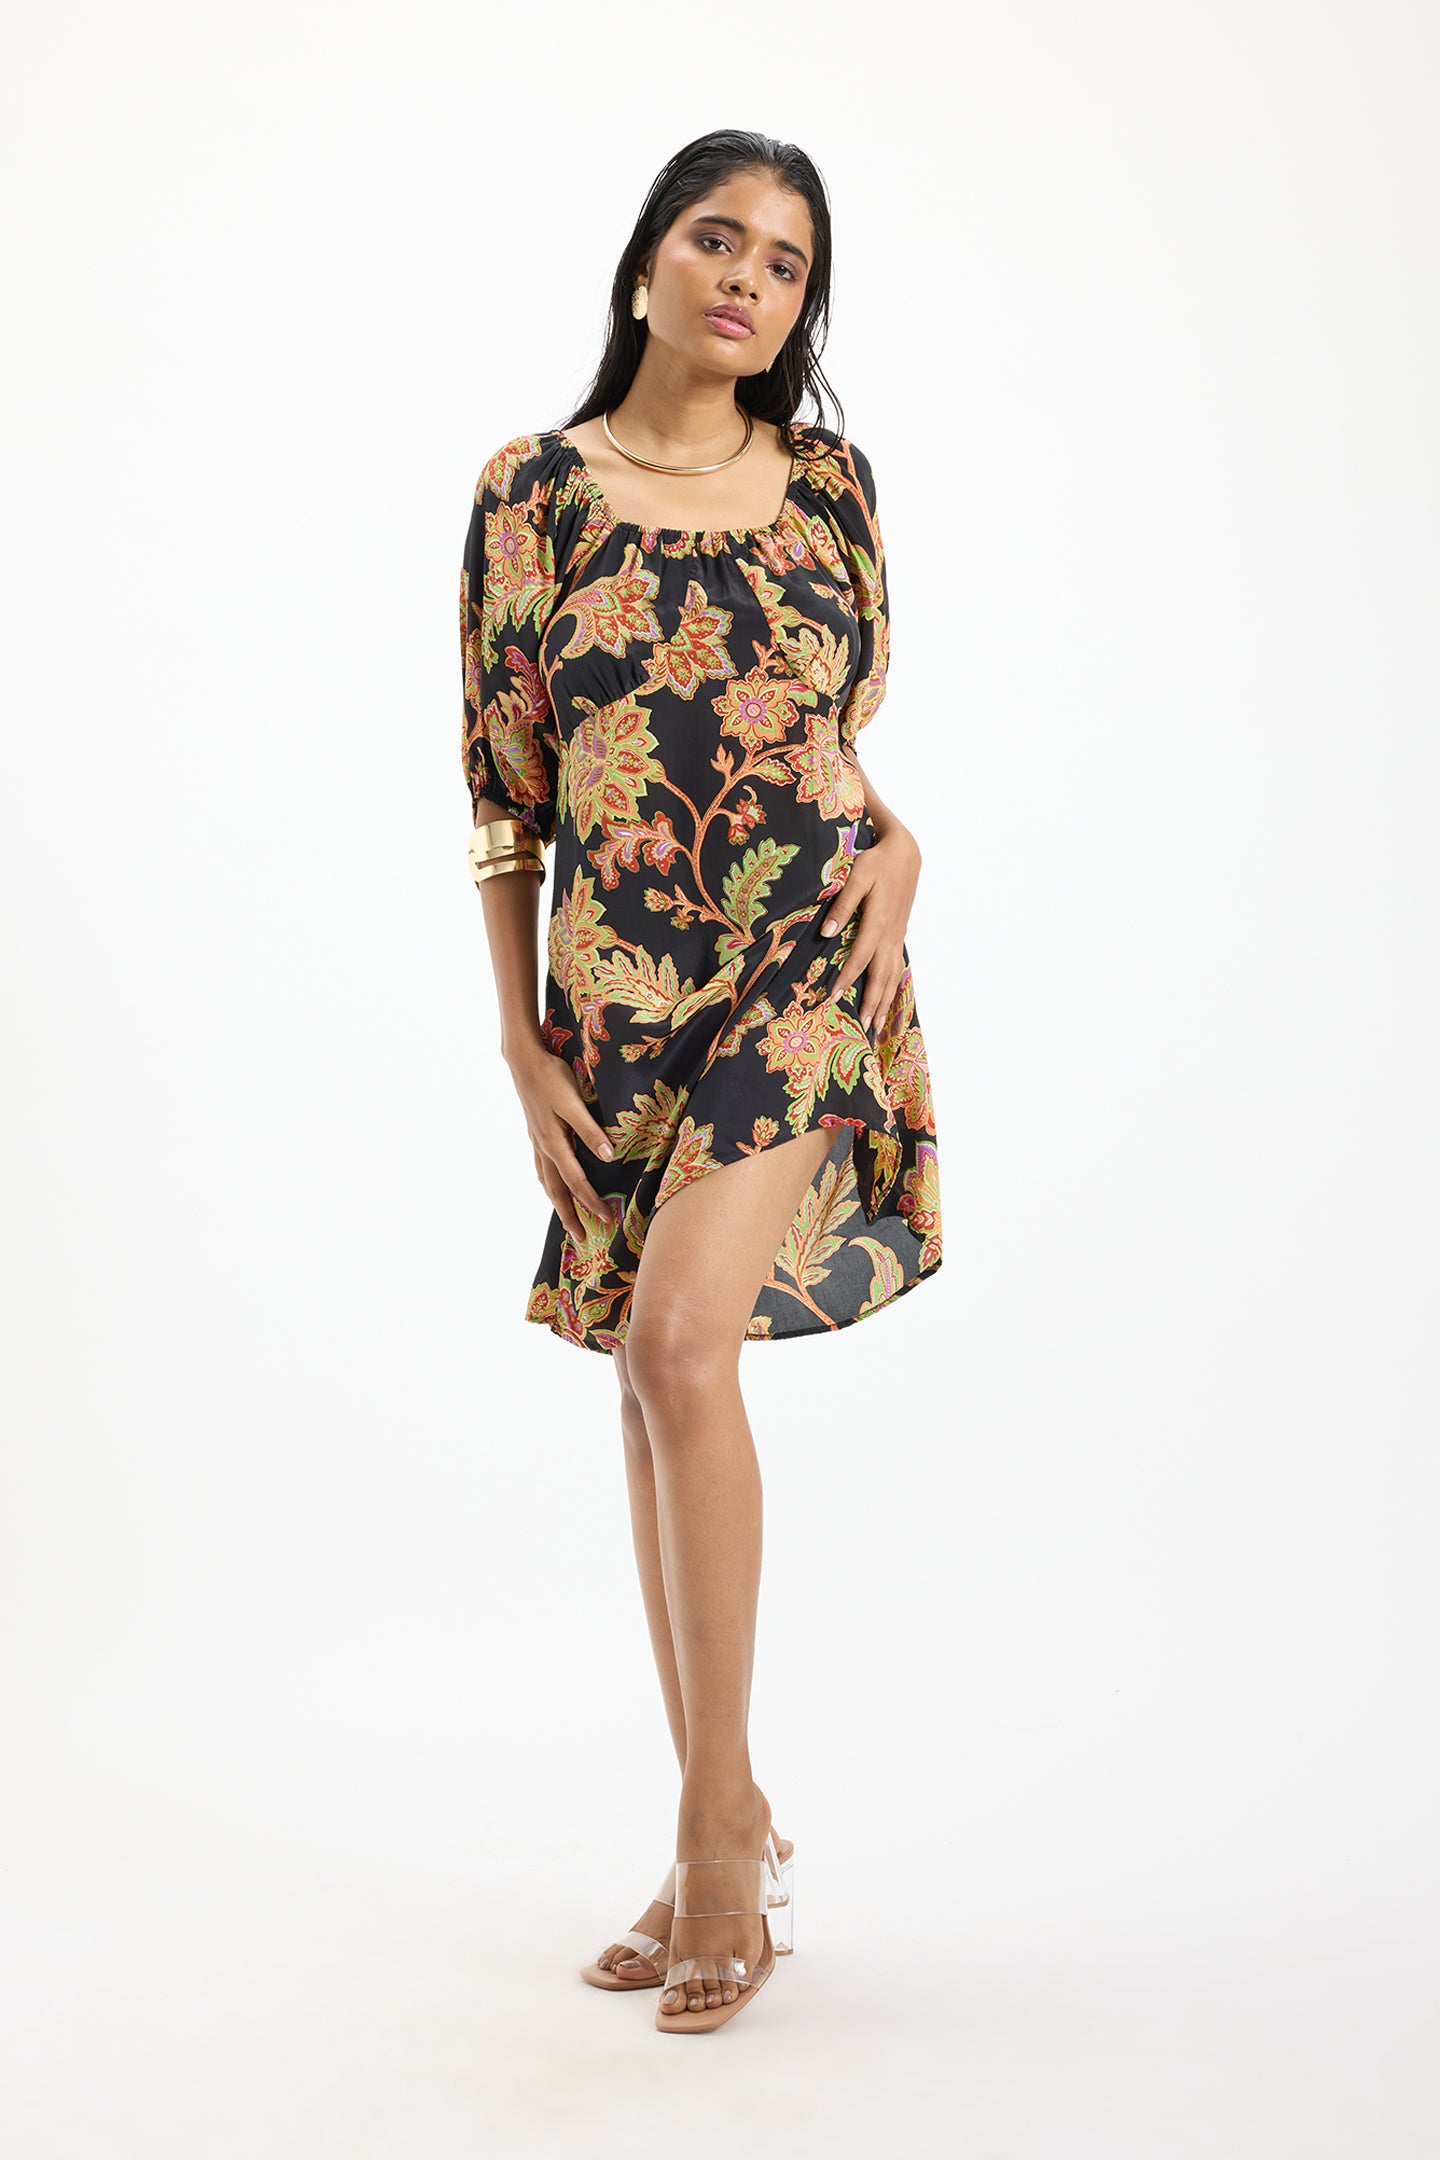 Nysa|Soft Lace-Up Viscose Ornate Dress